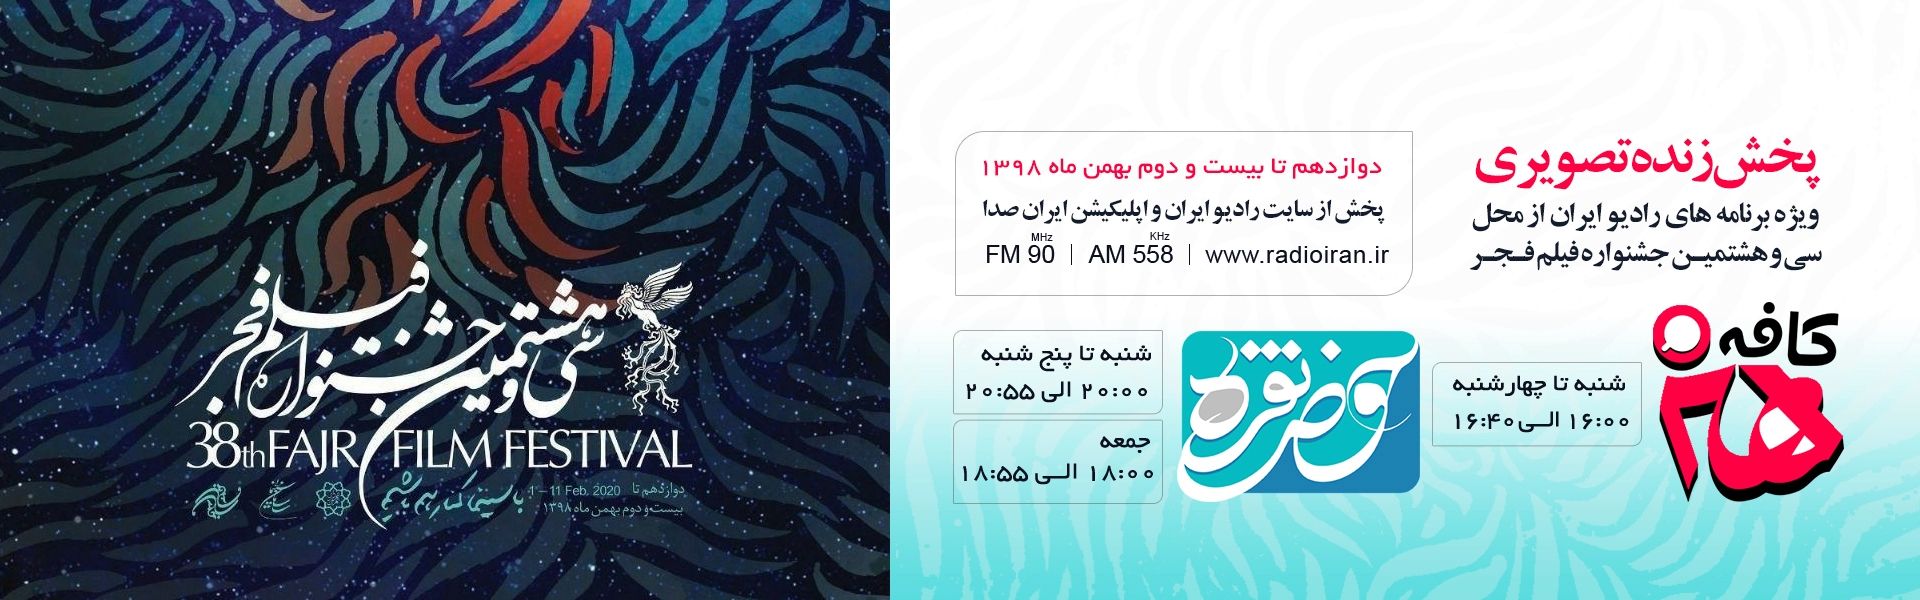 اختتامیه جشنواره فیلم فجر را از رادیوایران بشنوید